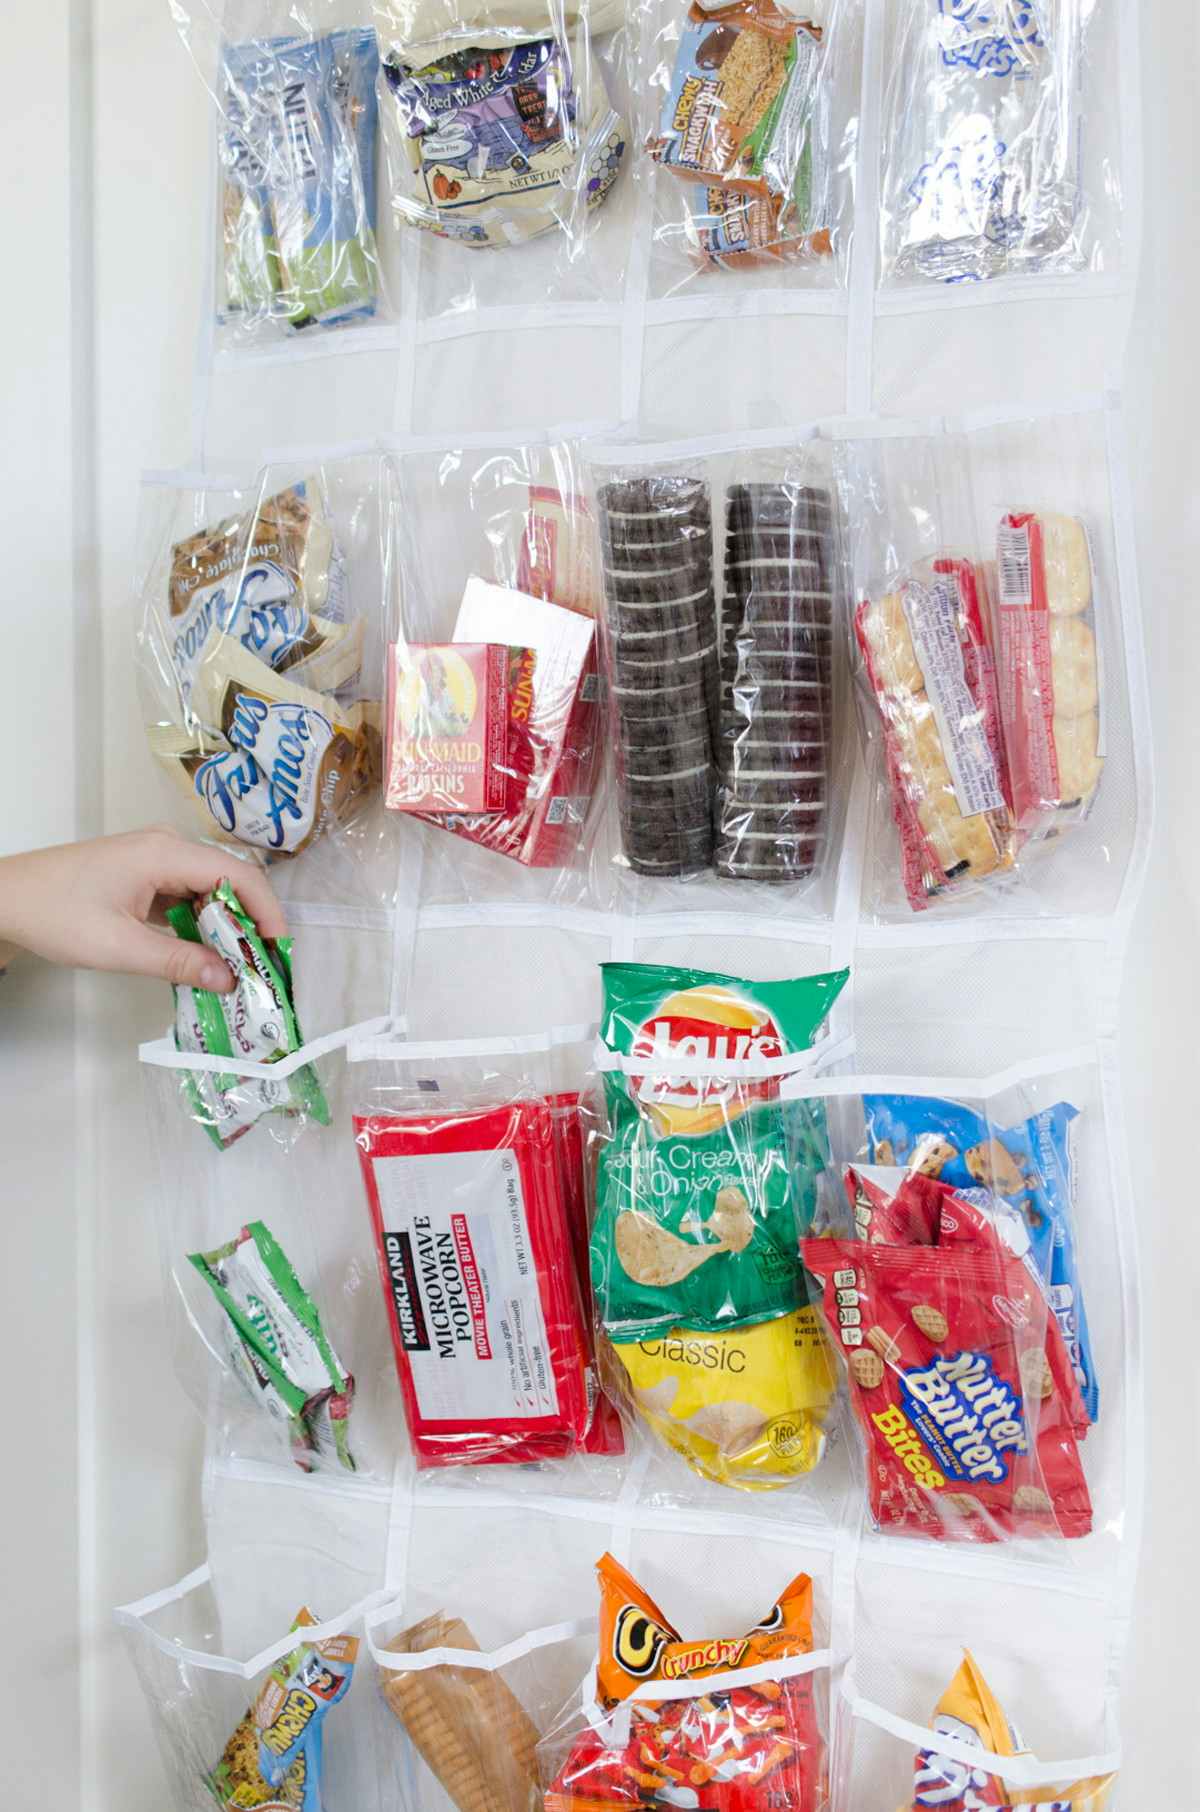 Make grabbing snacks easy for kids.